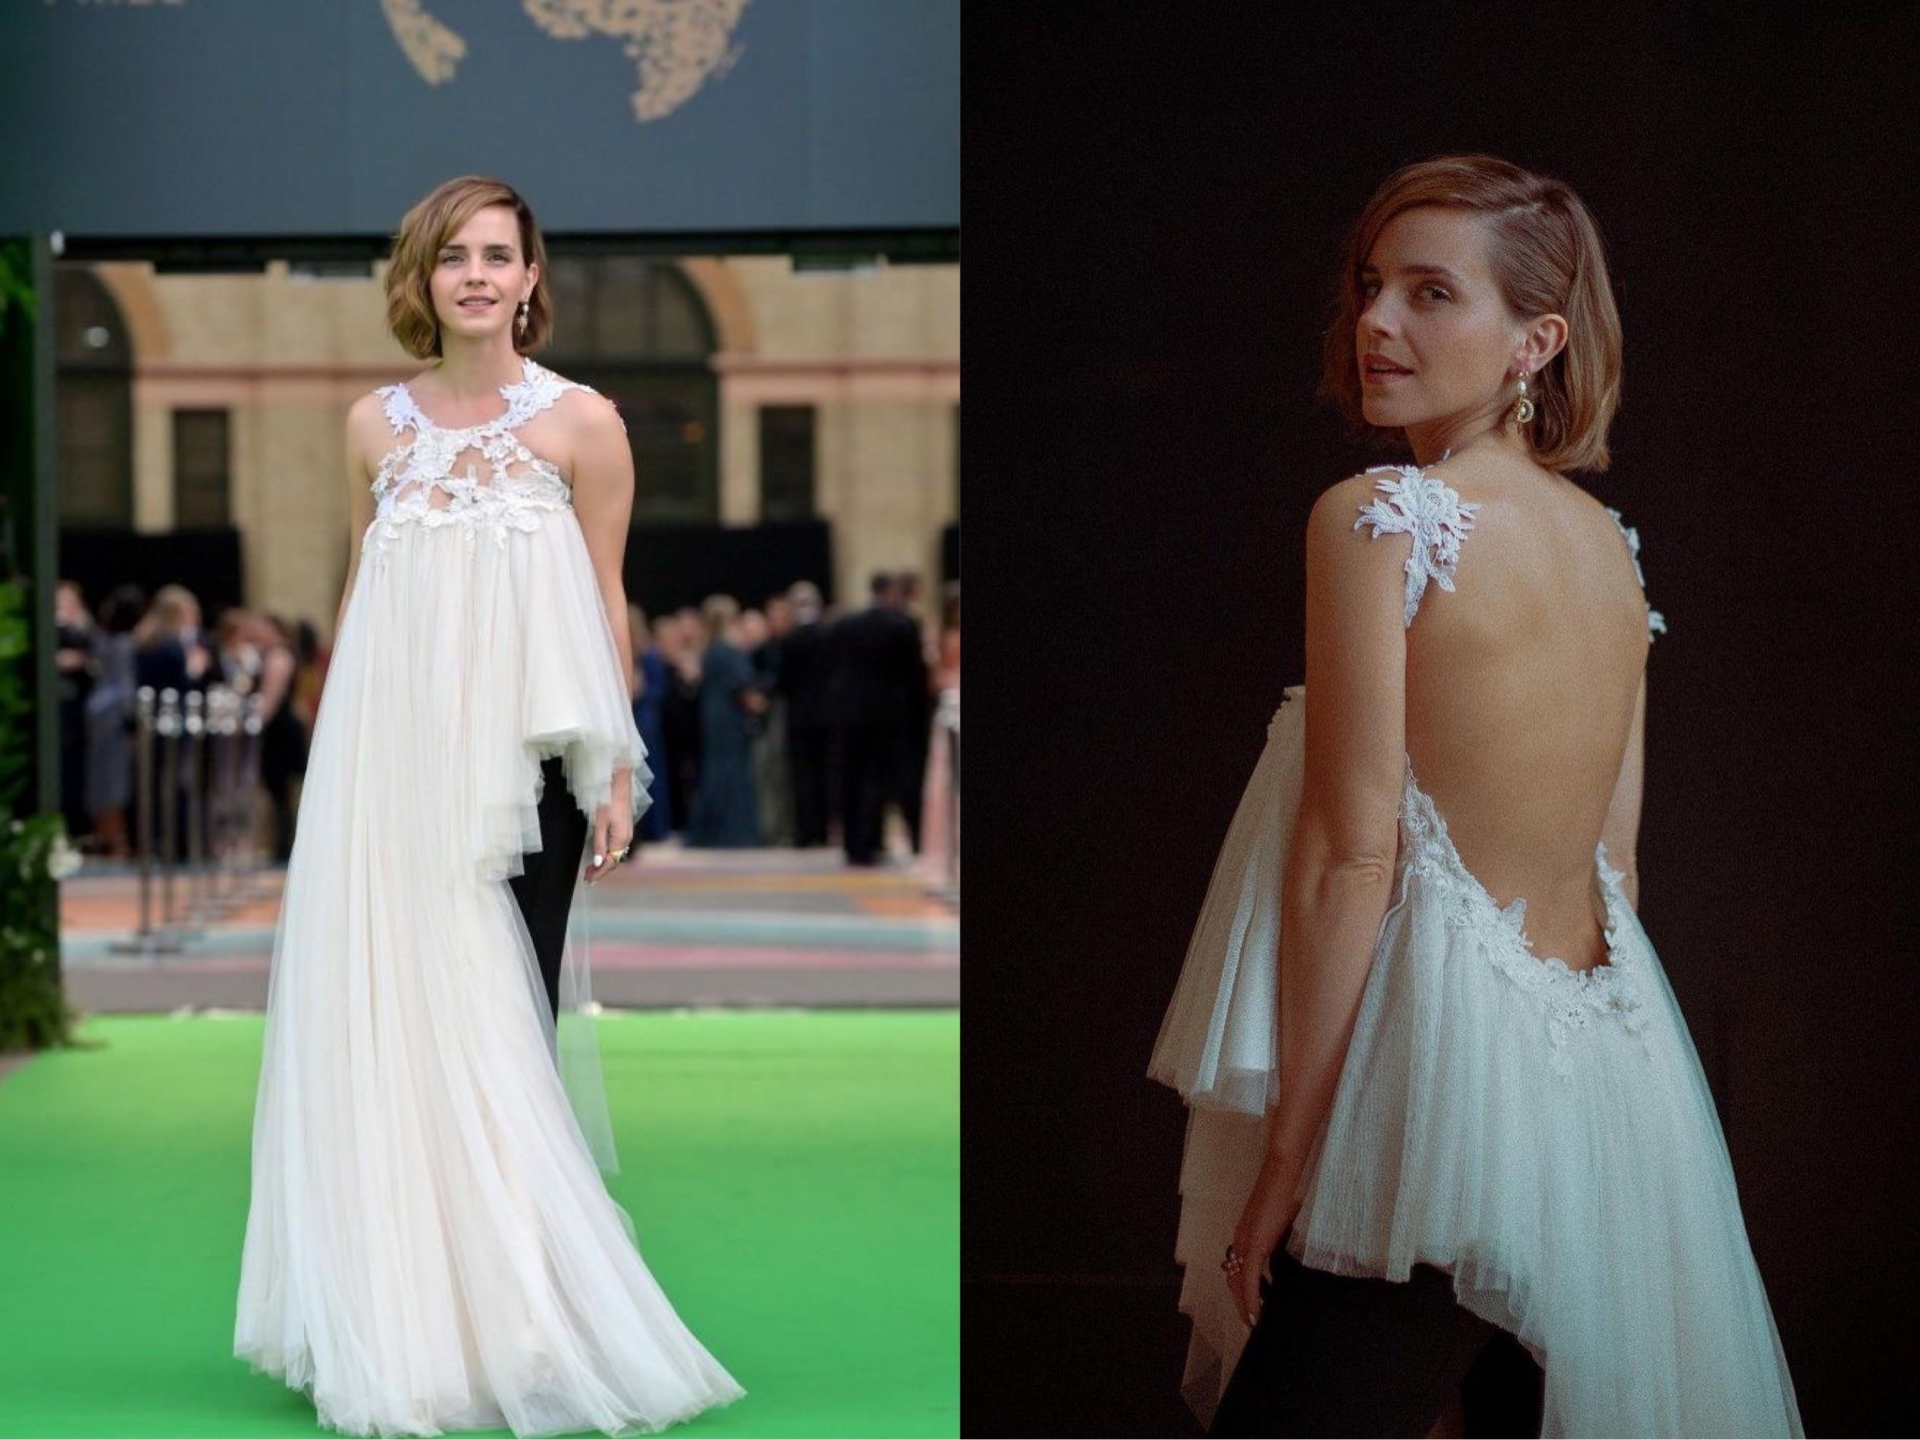 Cách đây không lâu, Emma Watson xuất hiện tại sự kiện Earthshot Prize 2021 với chiếc áo voan trắng cách điệu được làm từ 10 chiếc váy cưới cũ.